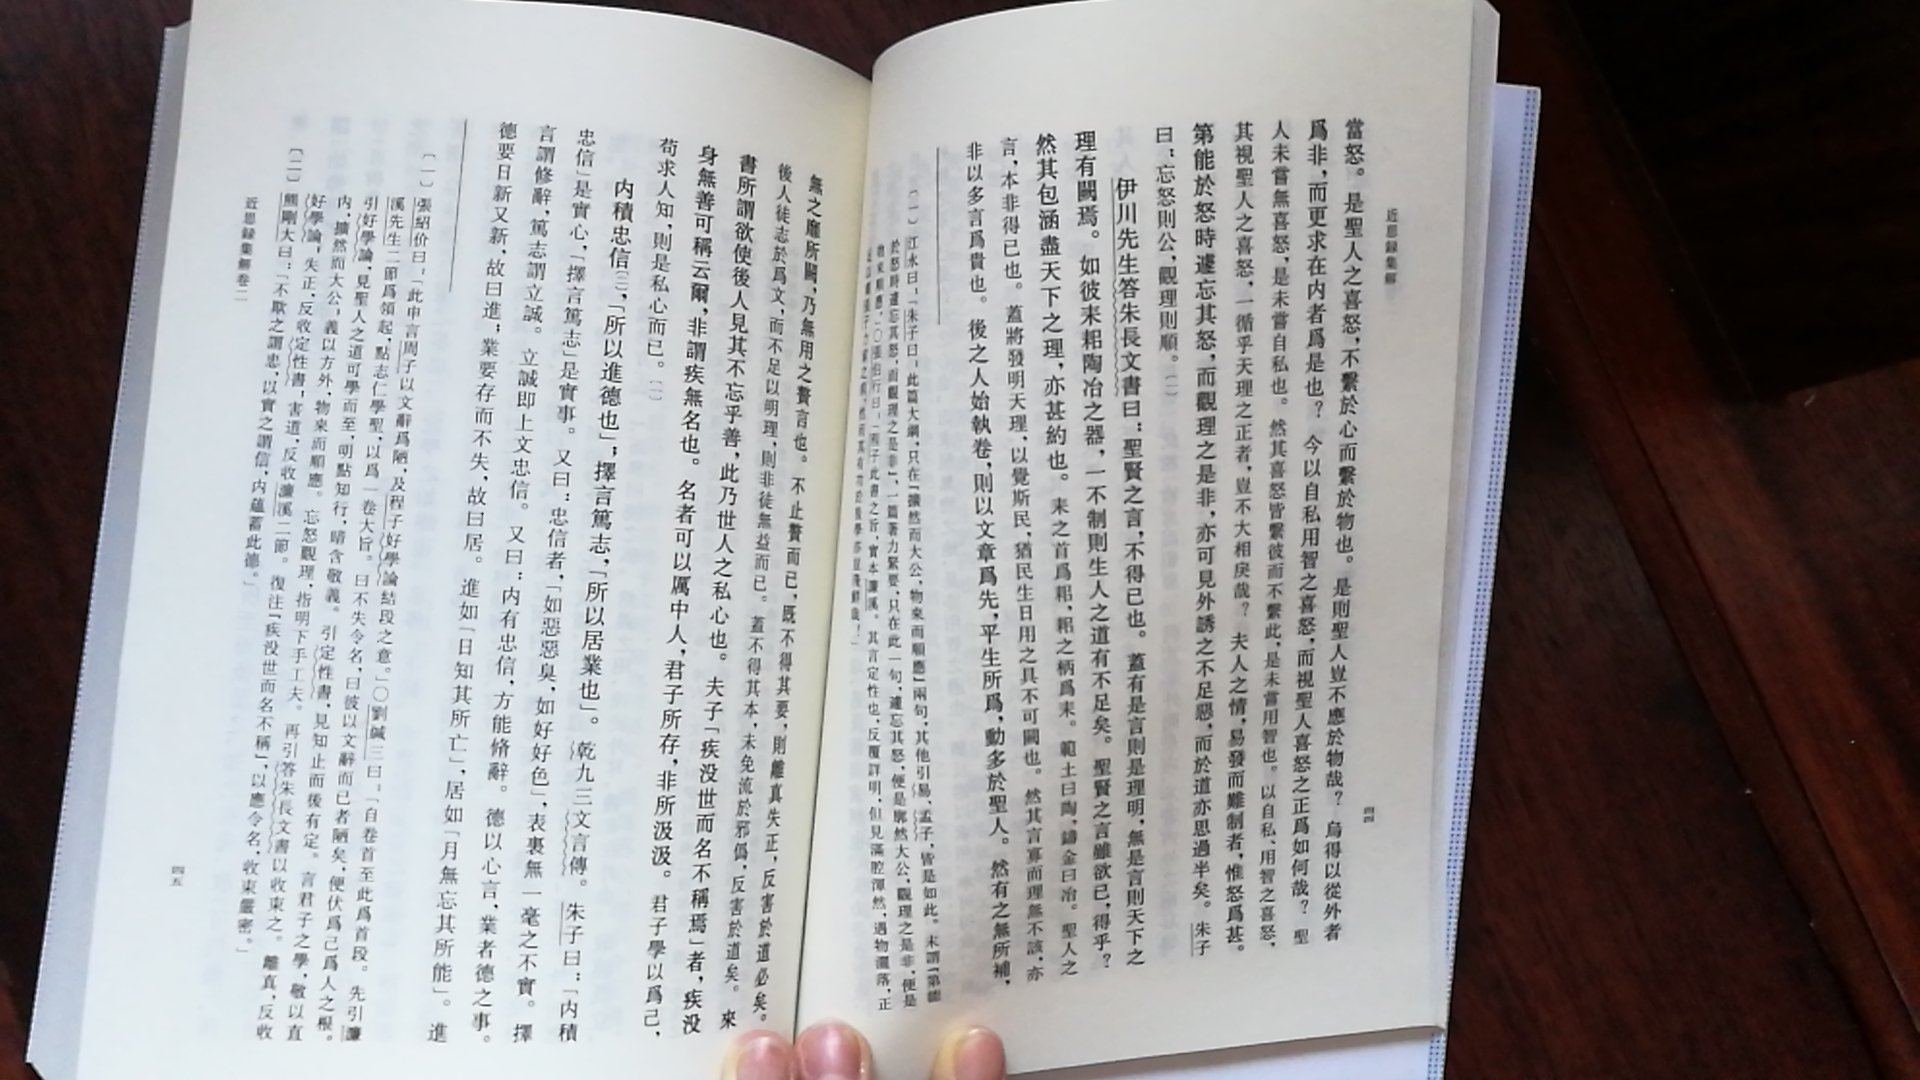 很棒的书，外表崭新内页清晰，非常喜欢中华书局理学丛书这个系列。